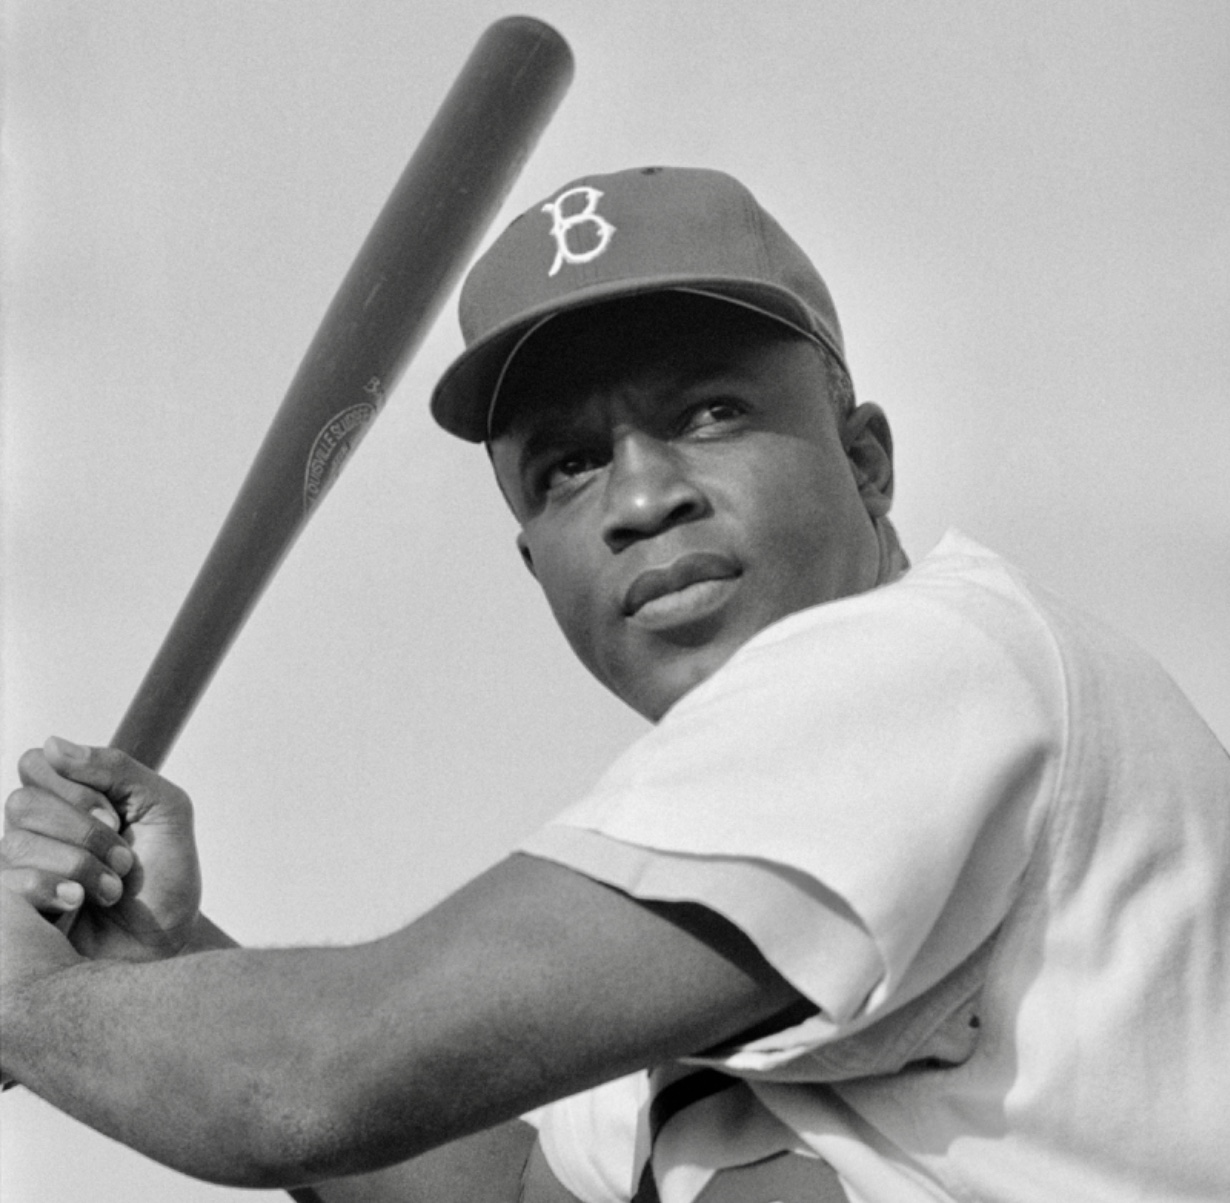 Une photo en noir et blanc d’un joueur de baseball tenant une batte.